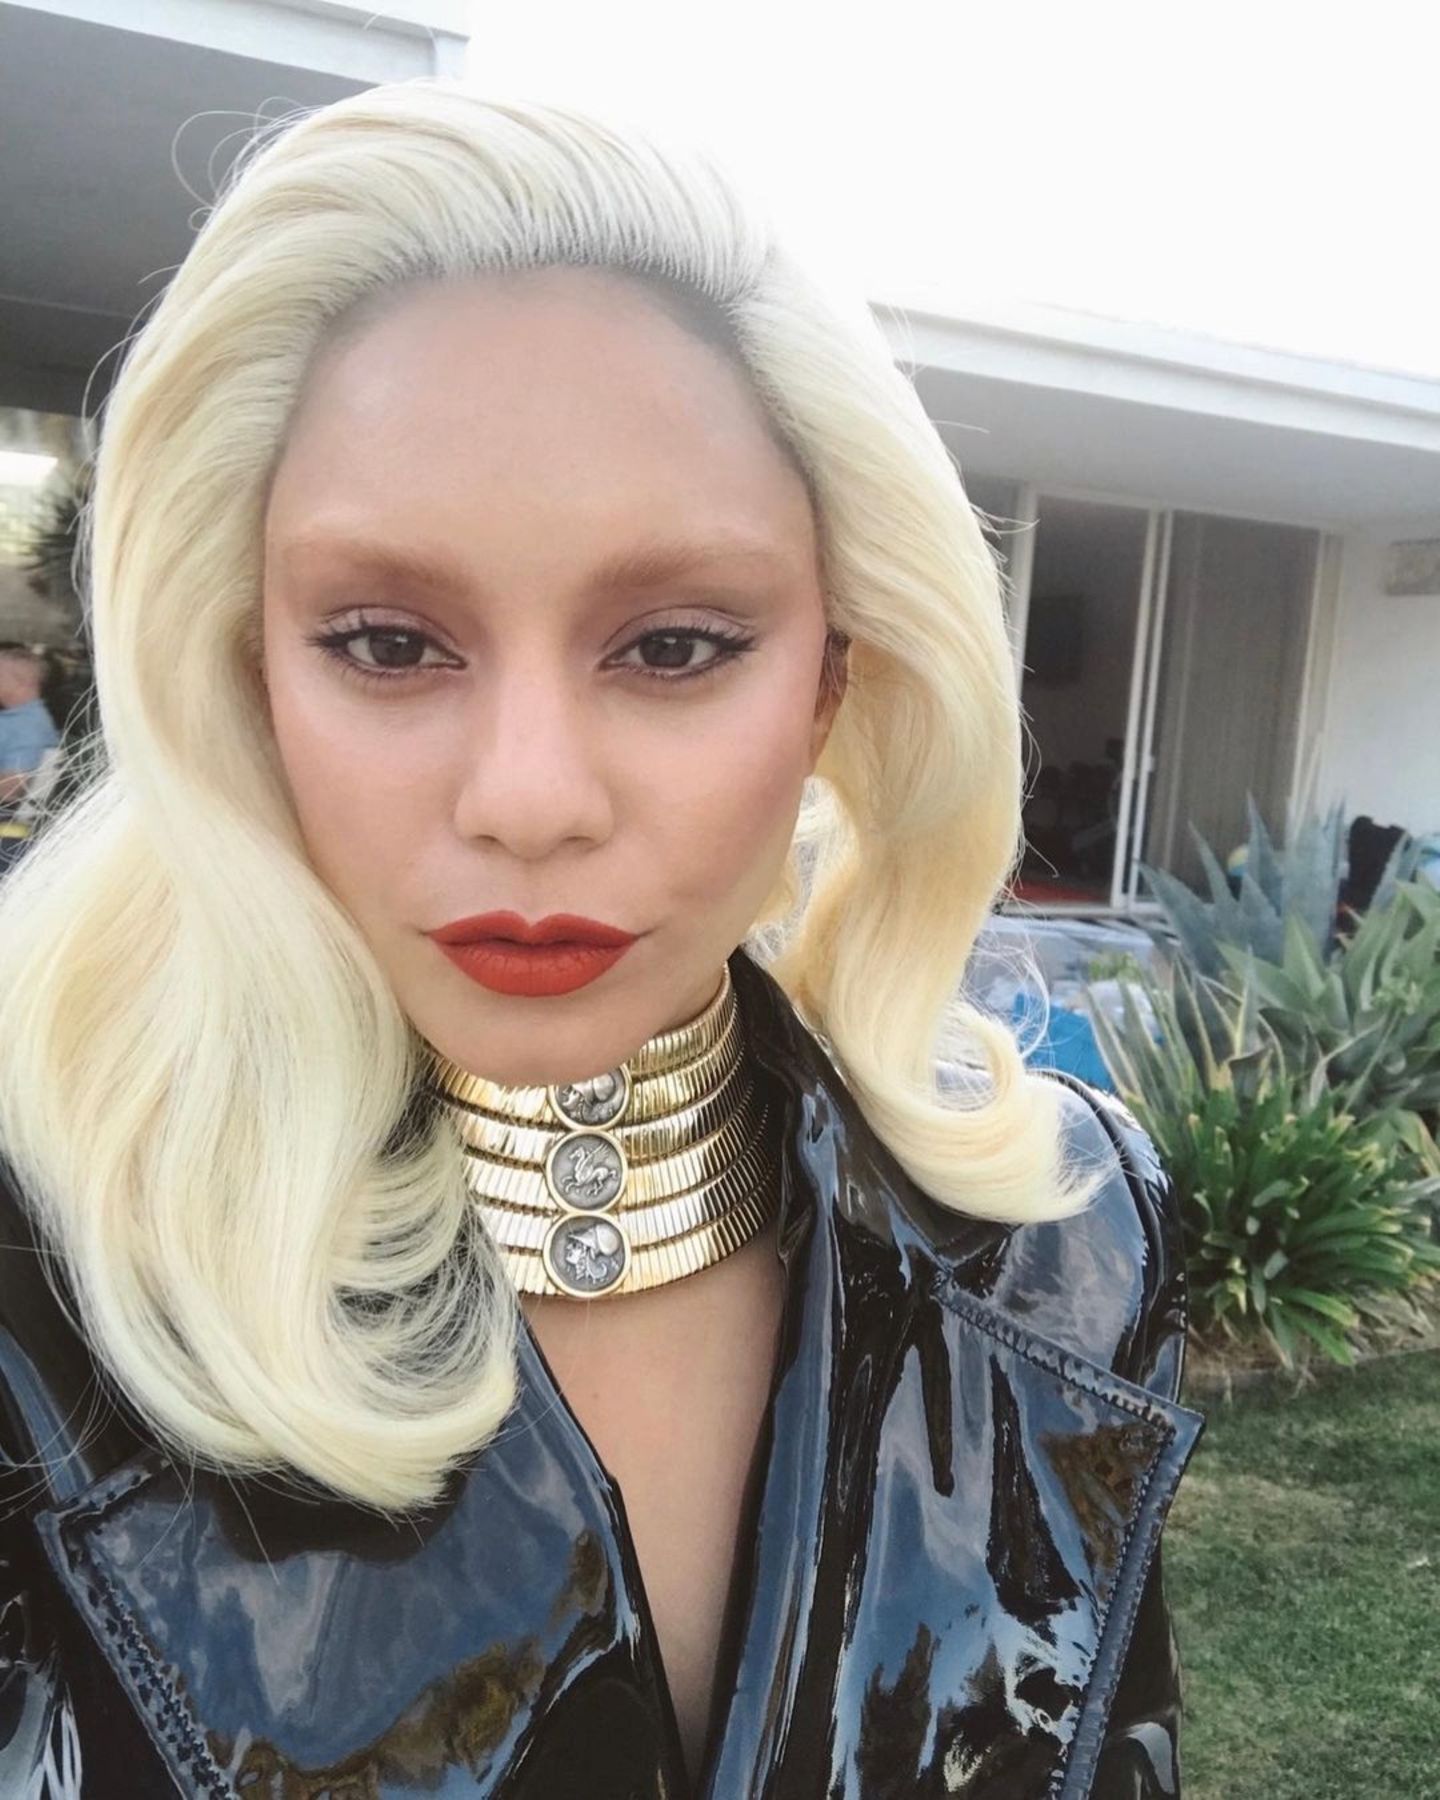 Komplette Typveränderung: Die eigentlich dunkelhaarige Vanessa Hudgens zeigt sich auf Instagram mit platinblonder Mähne und – huch! Wo sind denn ihre Augenbrauen hin? Während es sich bei den Haaren der Schauspielerin vermutlich um eine Perücke handelt, haben es ihre Brauen wirklich in sich: Die sogenannten "Bleached Brows", gesehen auf verschiedensten Laufstegen, waren dieses Jahr voll im Trend. Mit dem "neuen" Look sieht Vanessa einer ganz bestimmten Sängerin zum Verwechseln ähnlich – Fans schreiben zum Beispiel: "Gaga Hudgens, is that you?" und vergleichen sie so mit Superstar Lady Gaga.